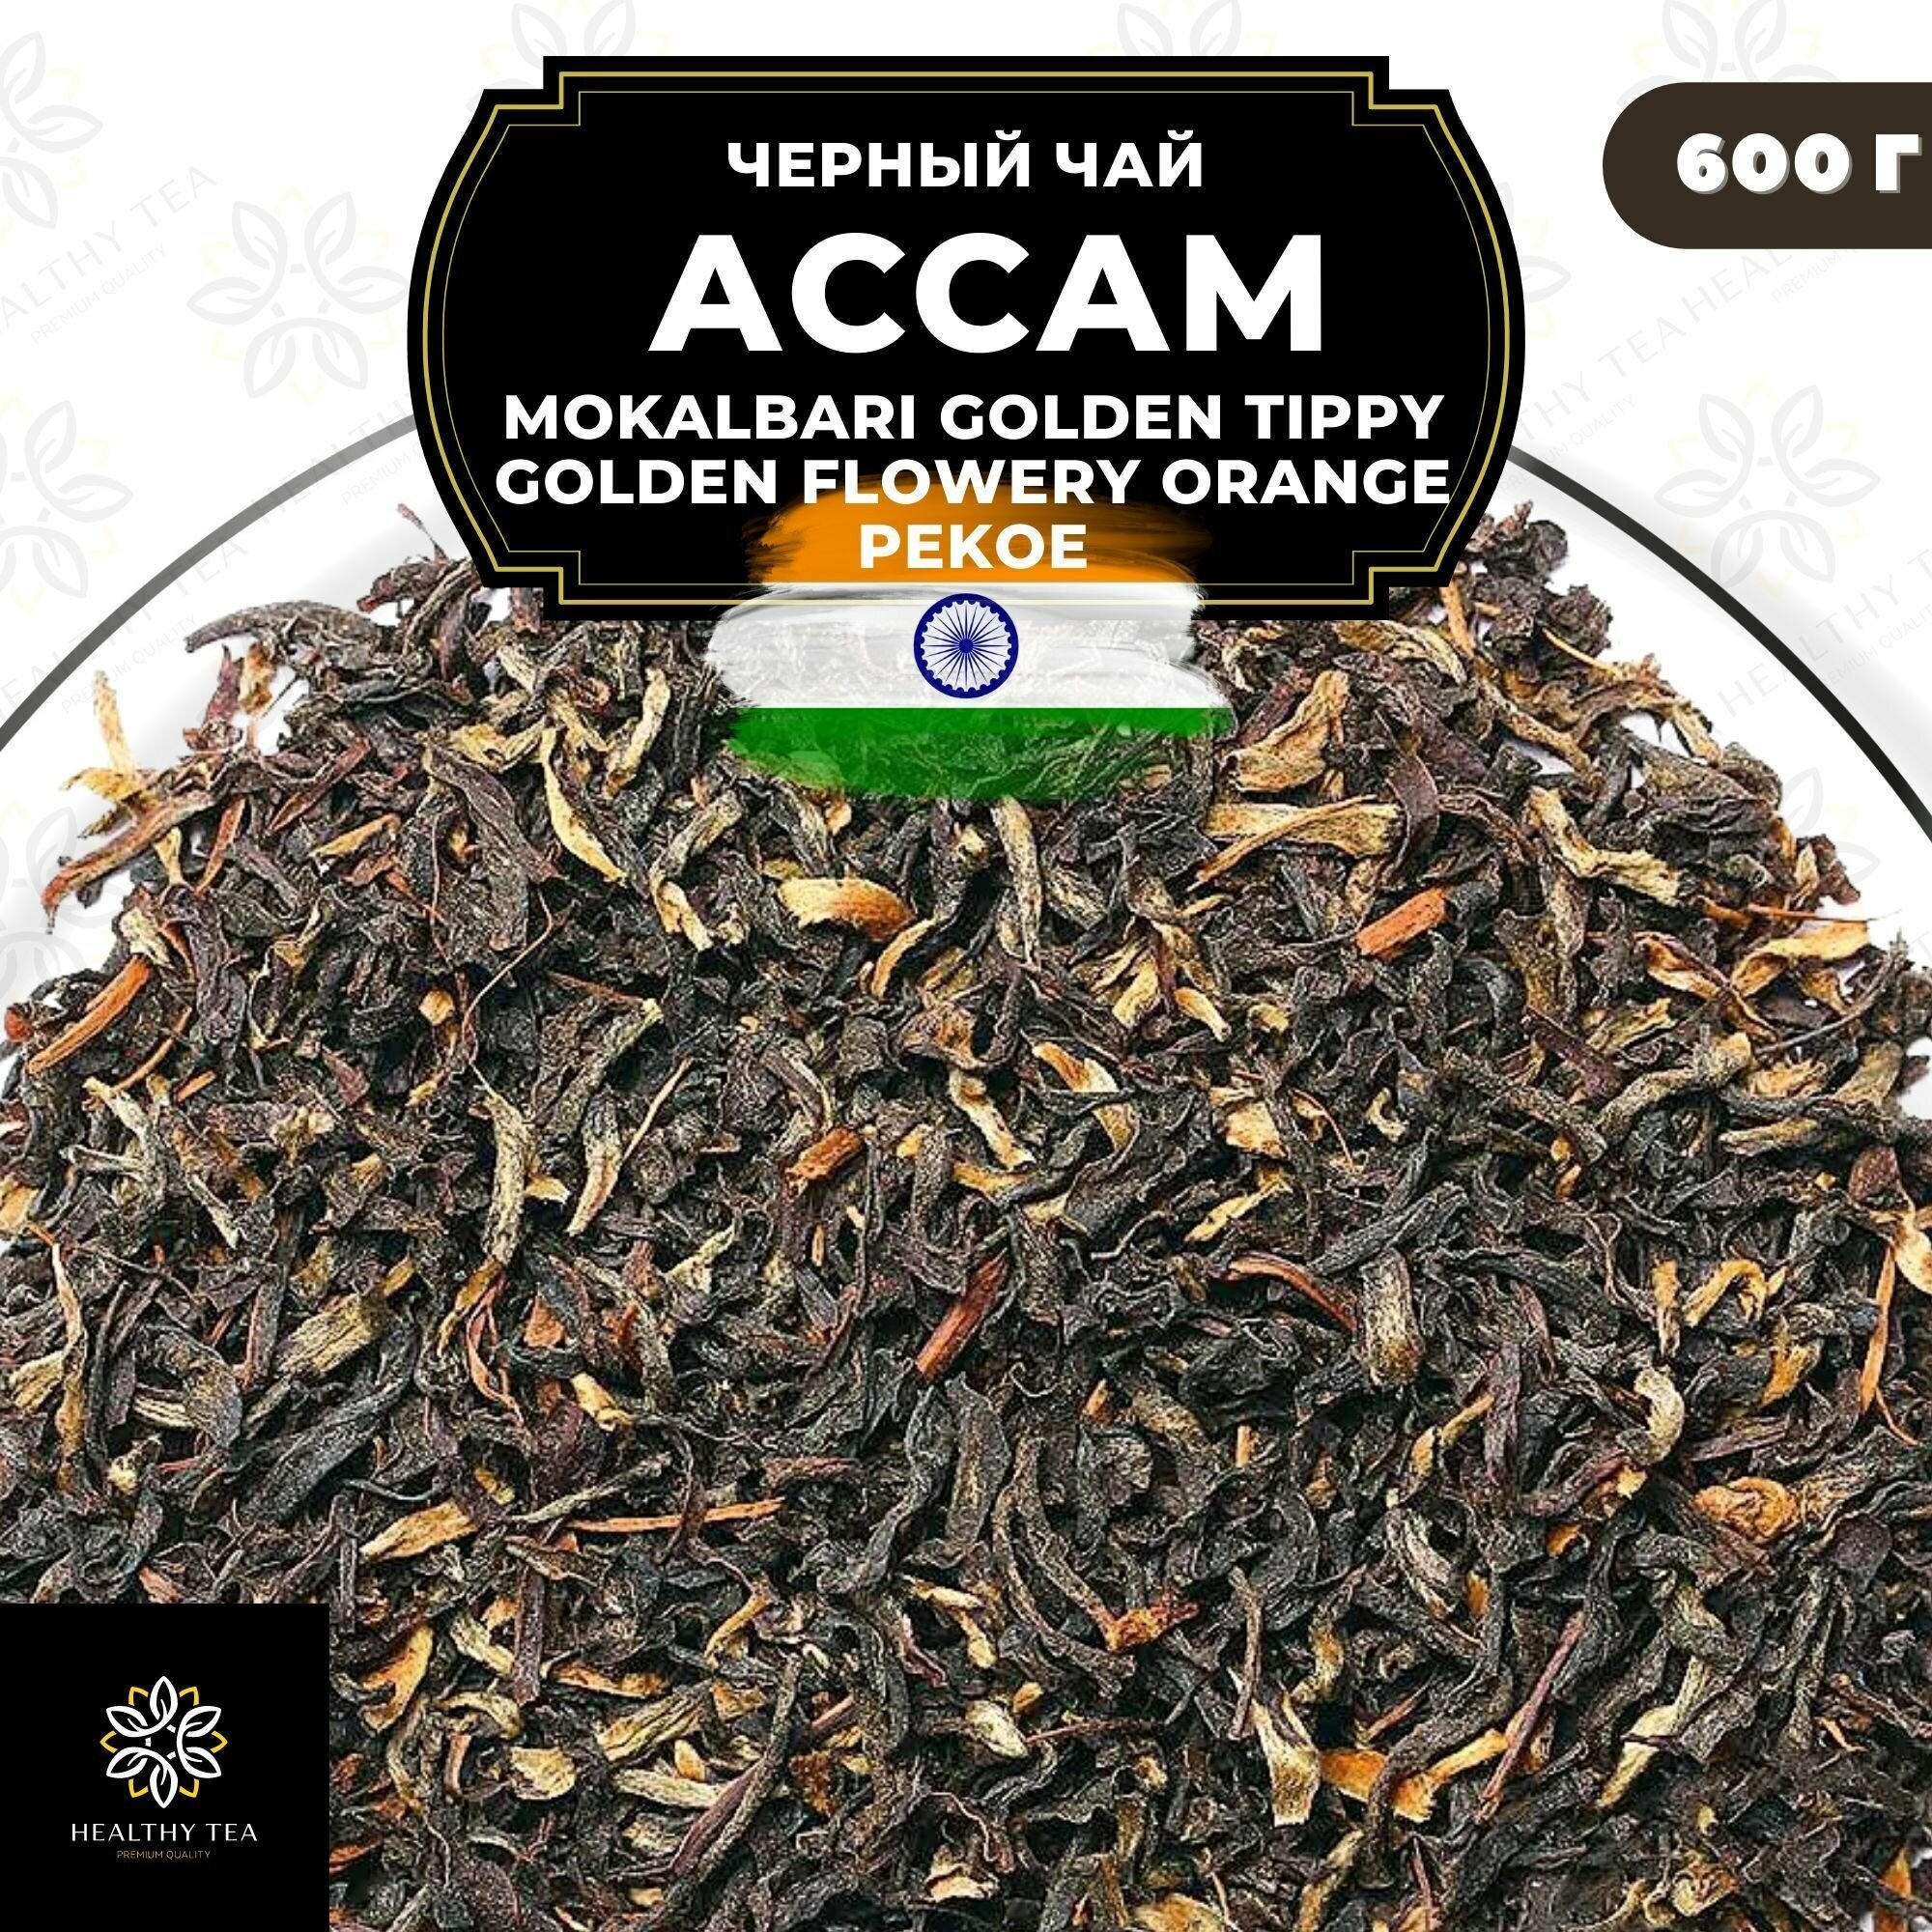 Черный чай Ассам Mokalbari Golden Tippy Flowery Orange Pekoe (GTGFOP) Полезный чай / HEALTHY TEA, 600 гр - фотография № 1